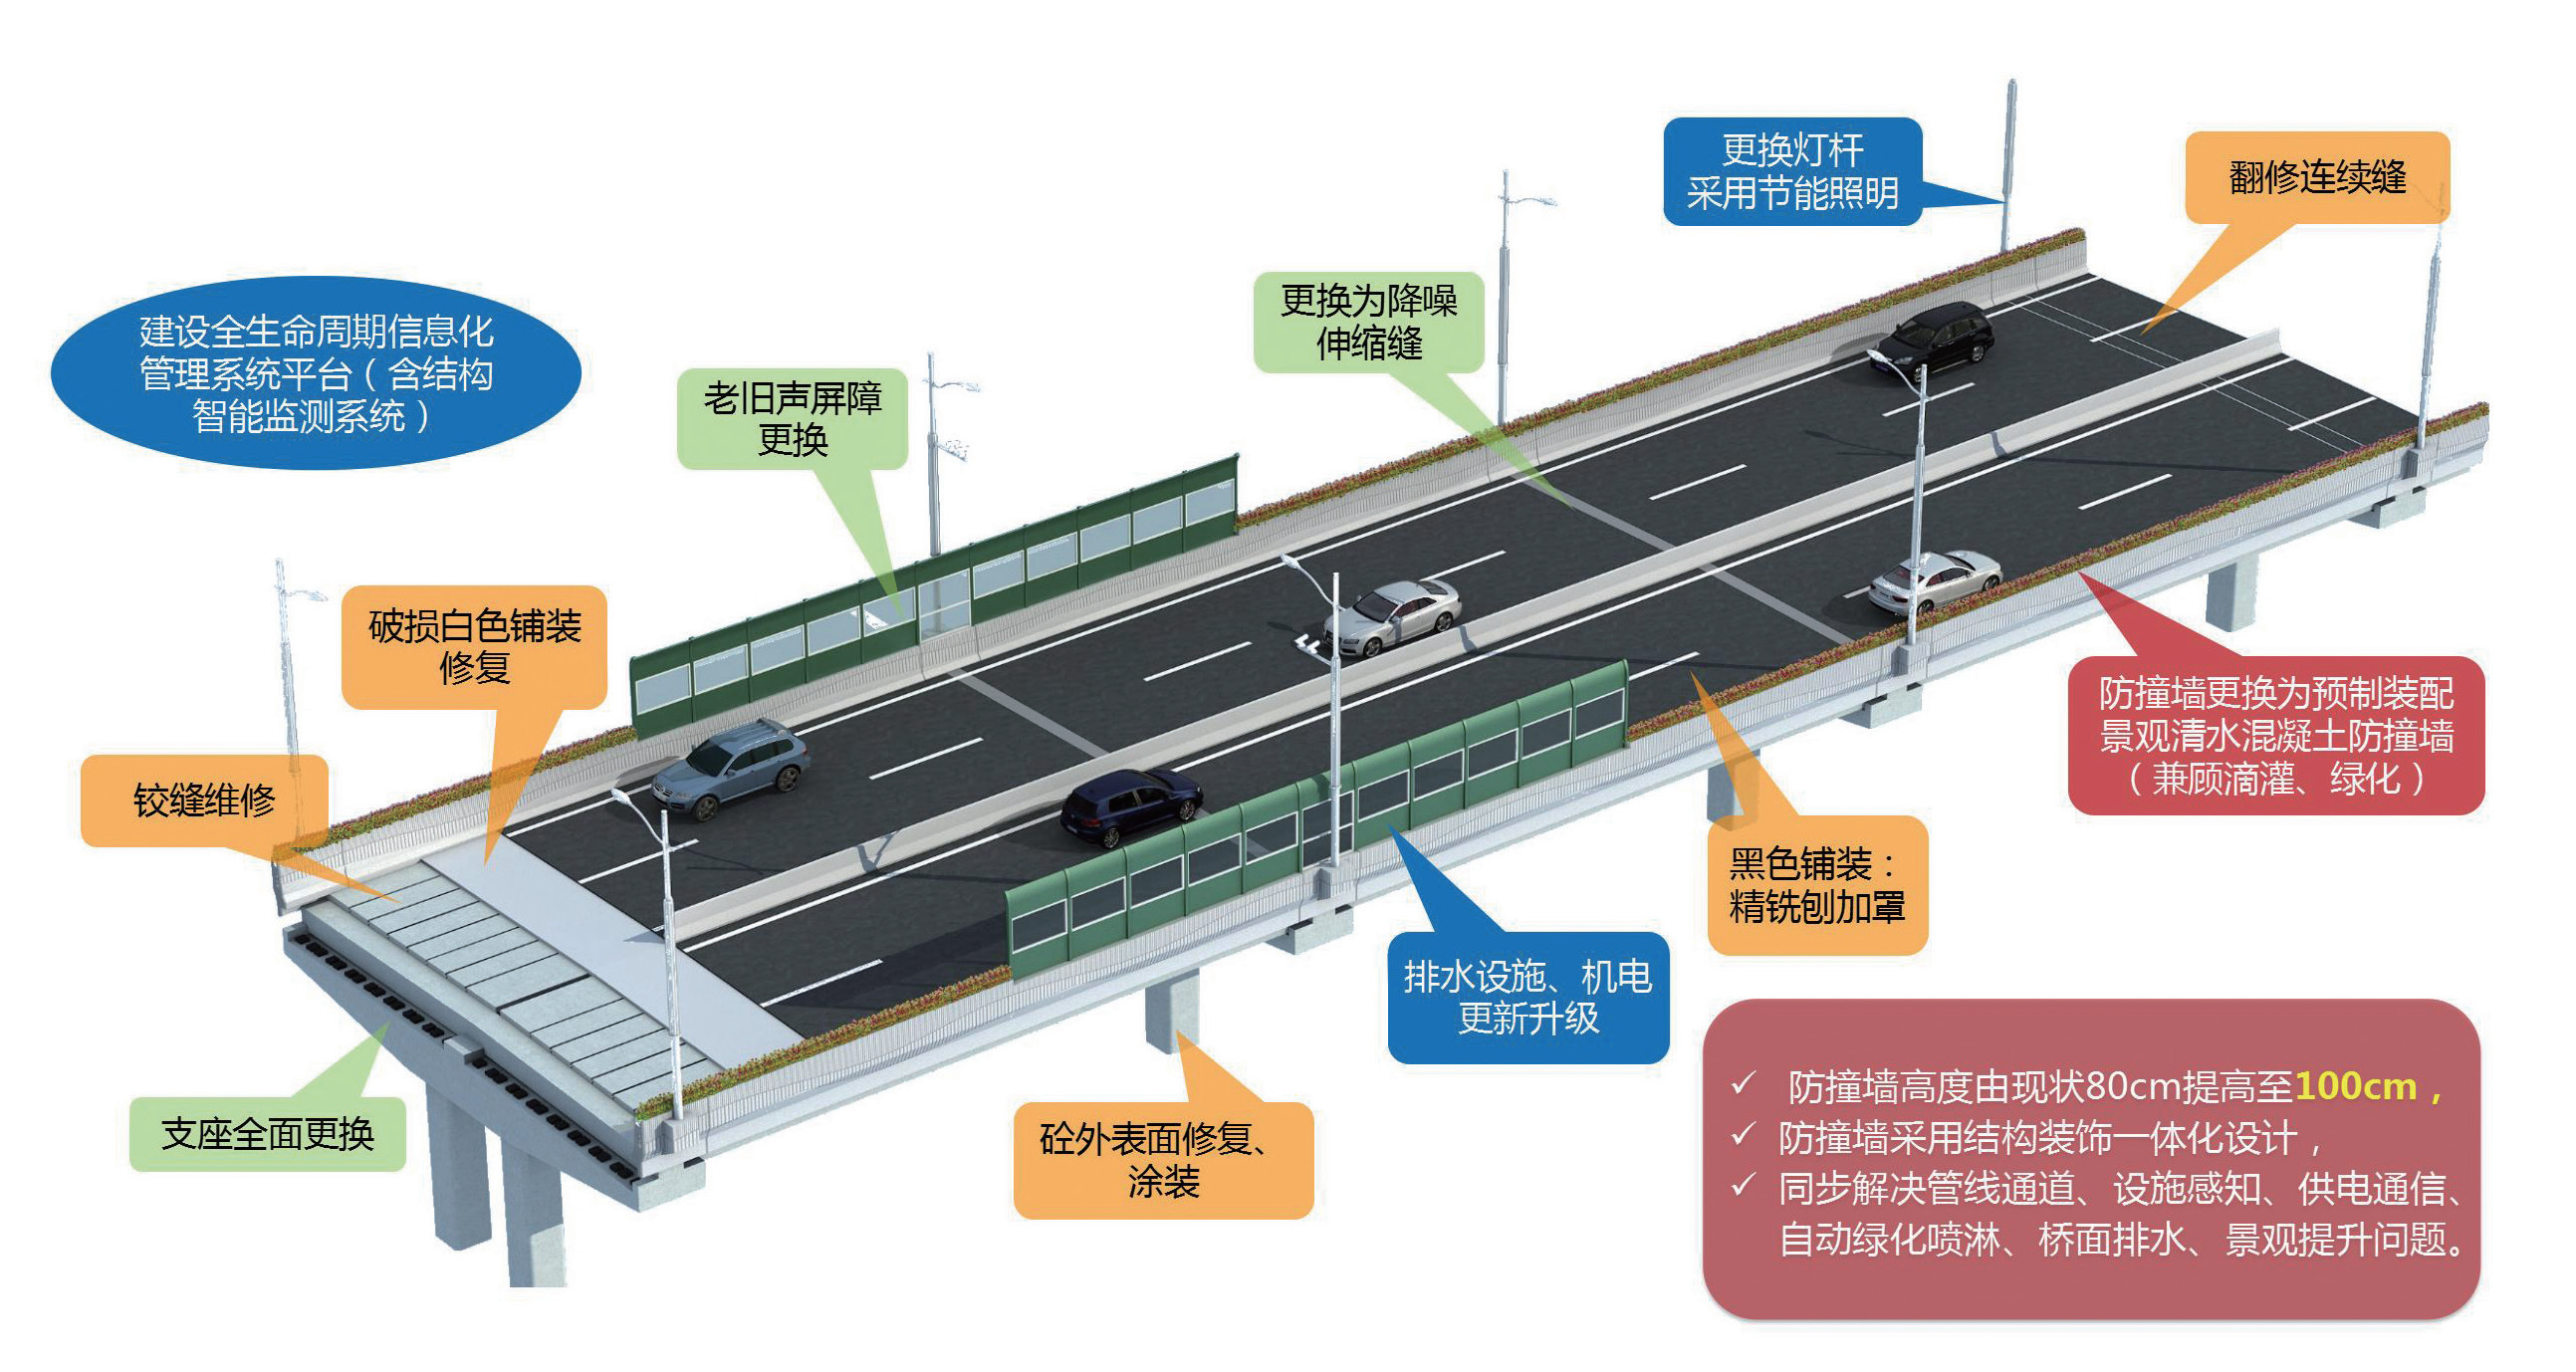 1 图1 上海内环高架“年轻化”工程.png